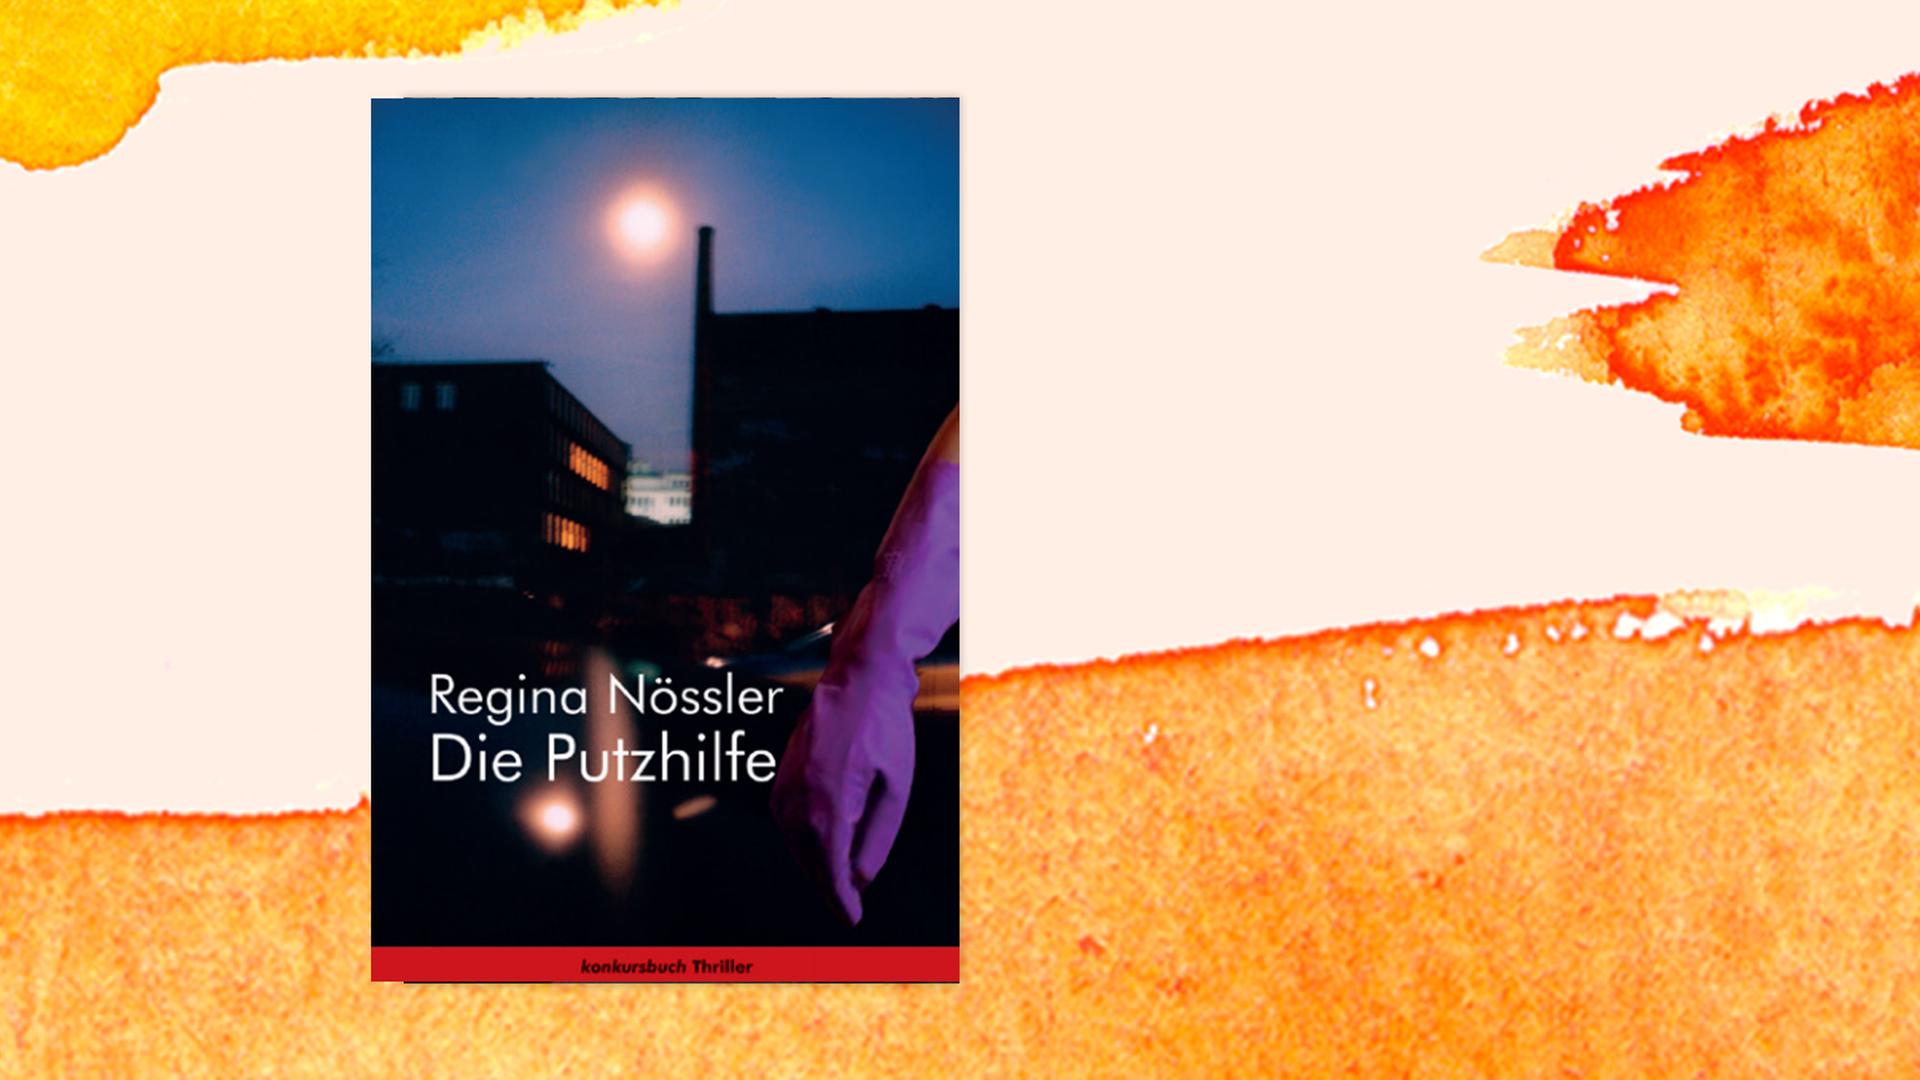 Buchcover von Regina Nösslers Krimi "Die Putzhilfe", auf dem eine dunkle Häuserkulisse nur von einer Straßenlaterne beleuchtet wird.